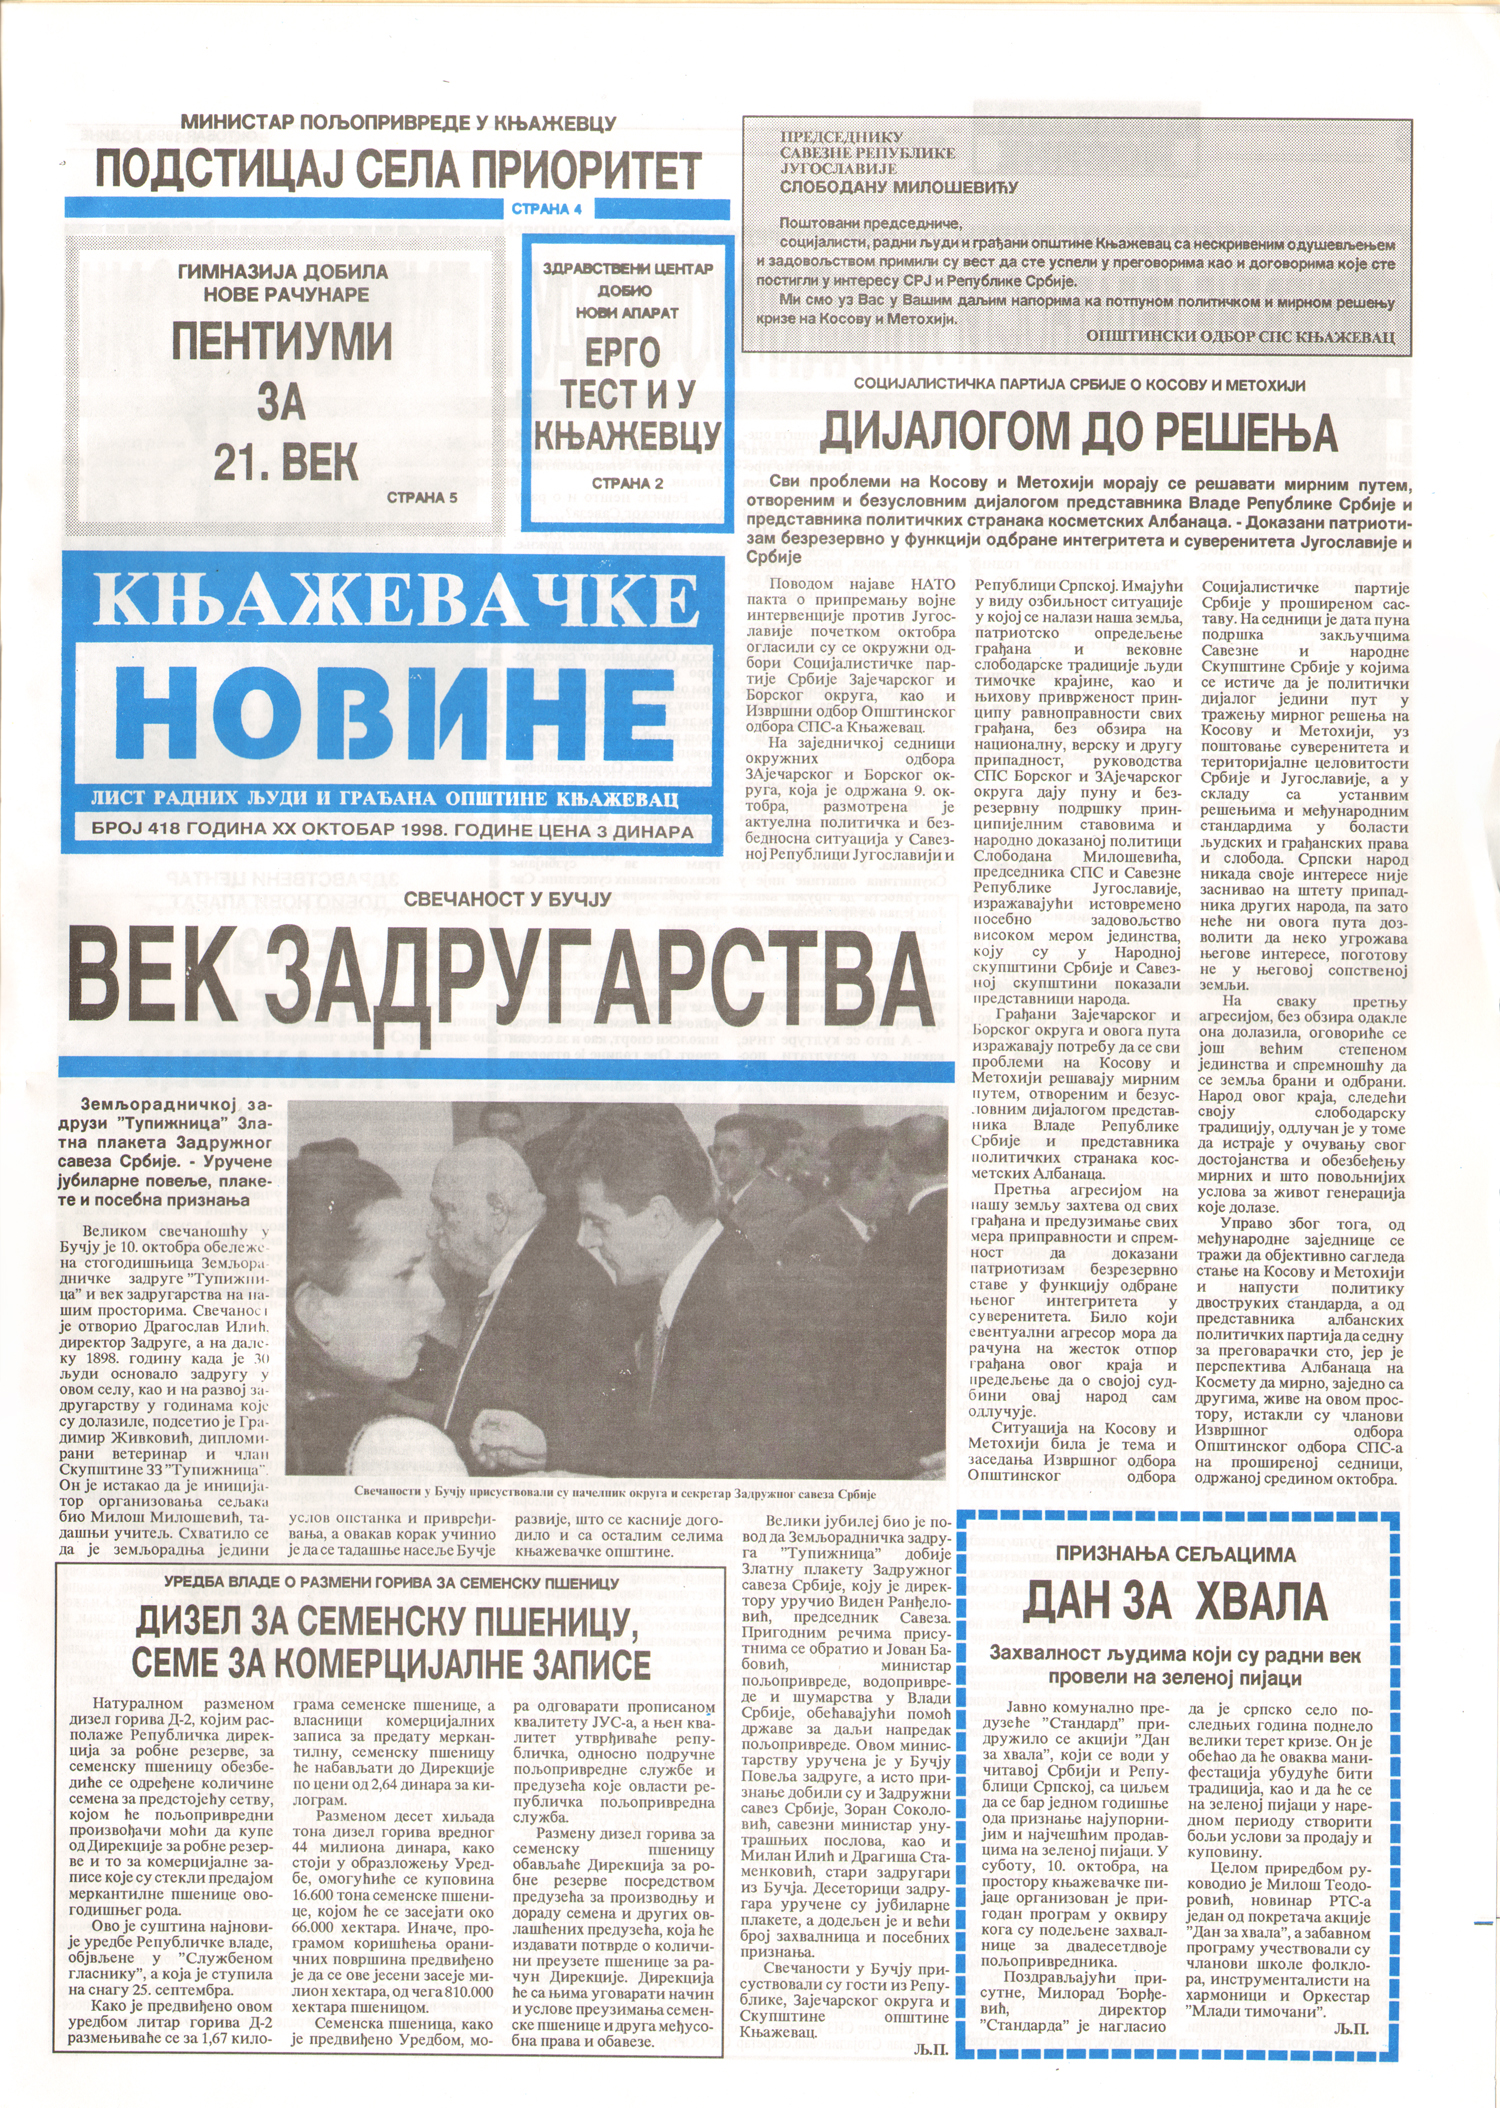 Књажевачке новине, број 418, година 1998